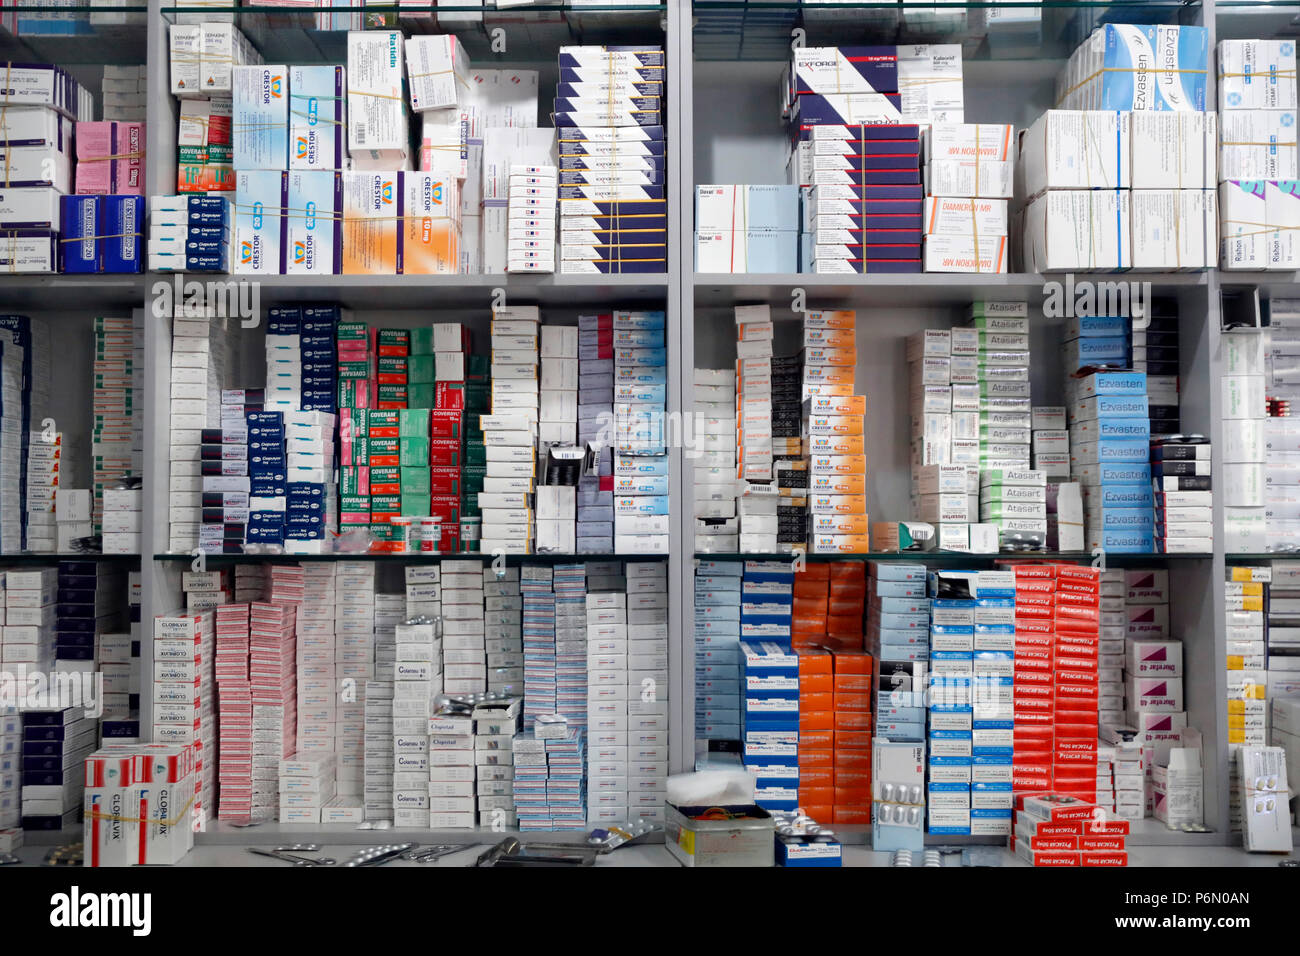 Hospital pharmacy.  Medicine in the shelves.  Ho Chi Minh City. Vietnam. Stock Photo